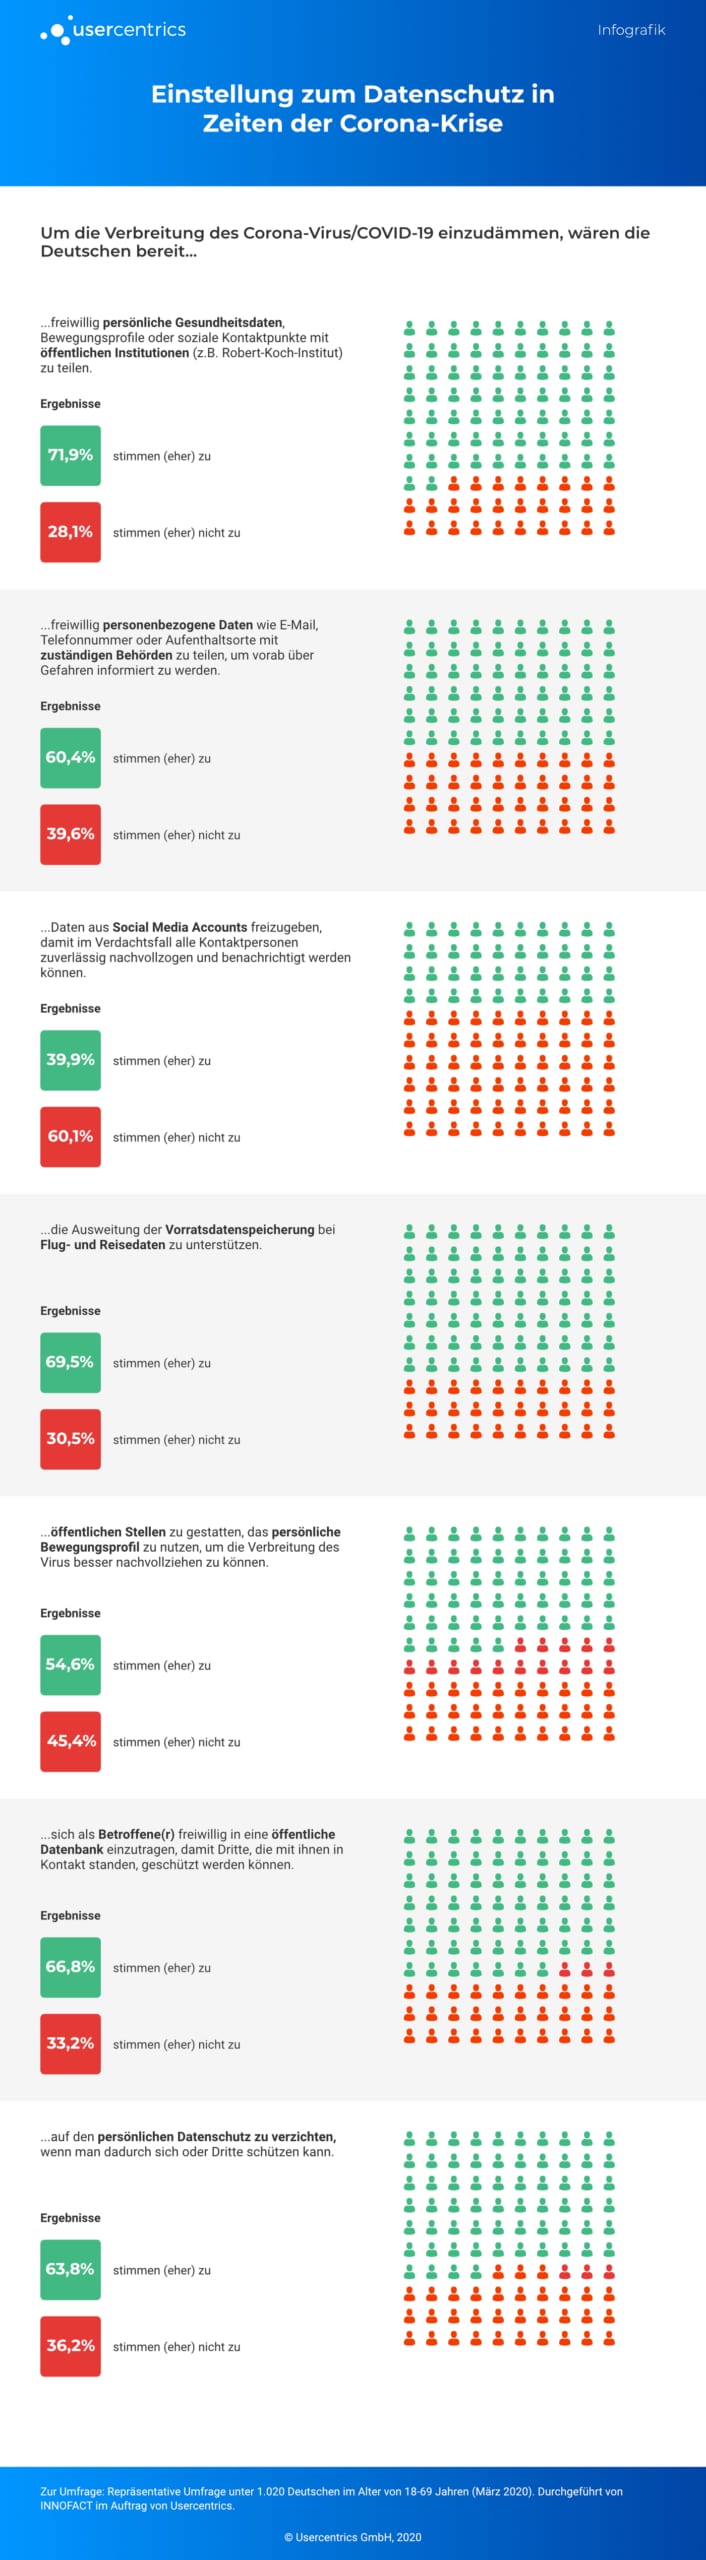 Infografik - Corona Umfrage Usercentrics